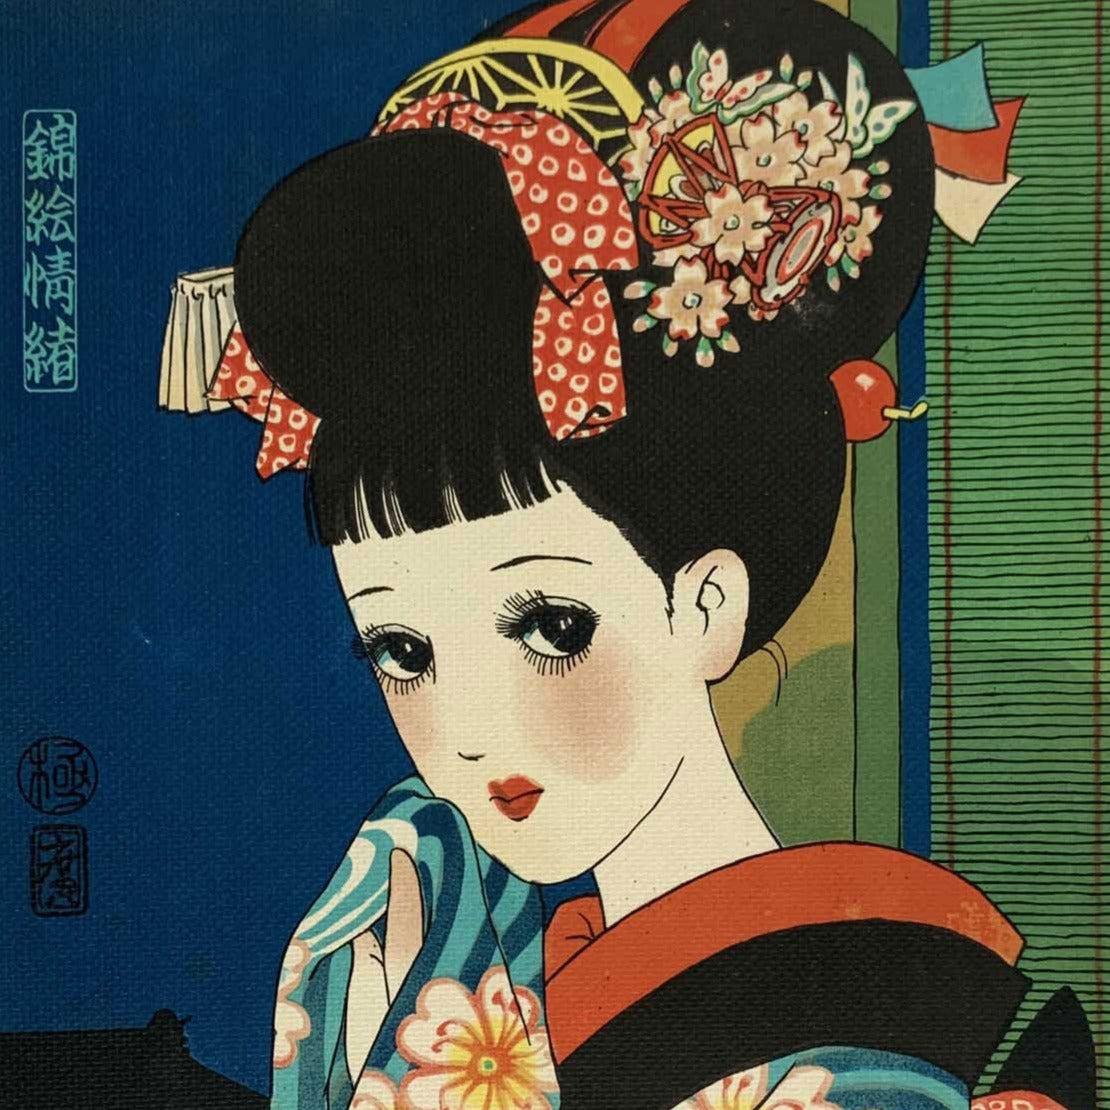 estampe japonaise lithographie jeune fille aux grands yeux de manga, en habit traditionnel devant une fenetre le soir, gros plan sur le visage